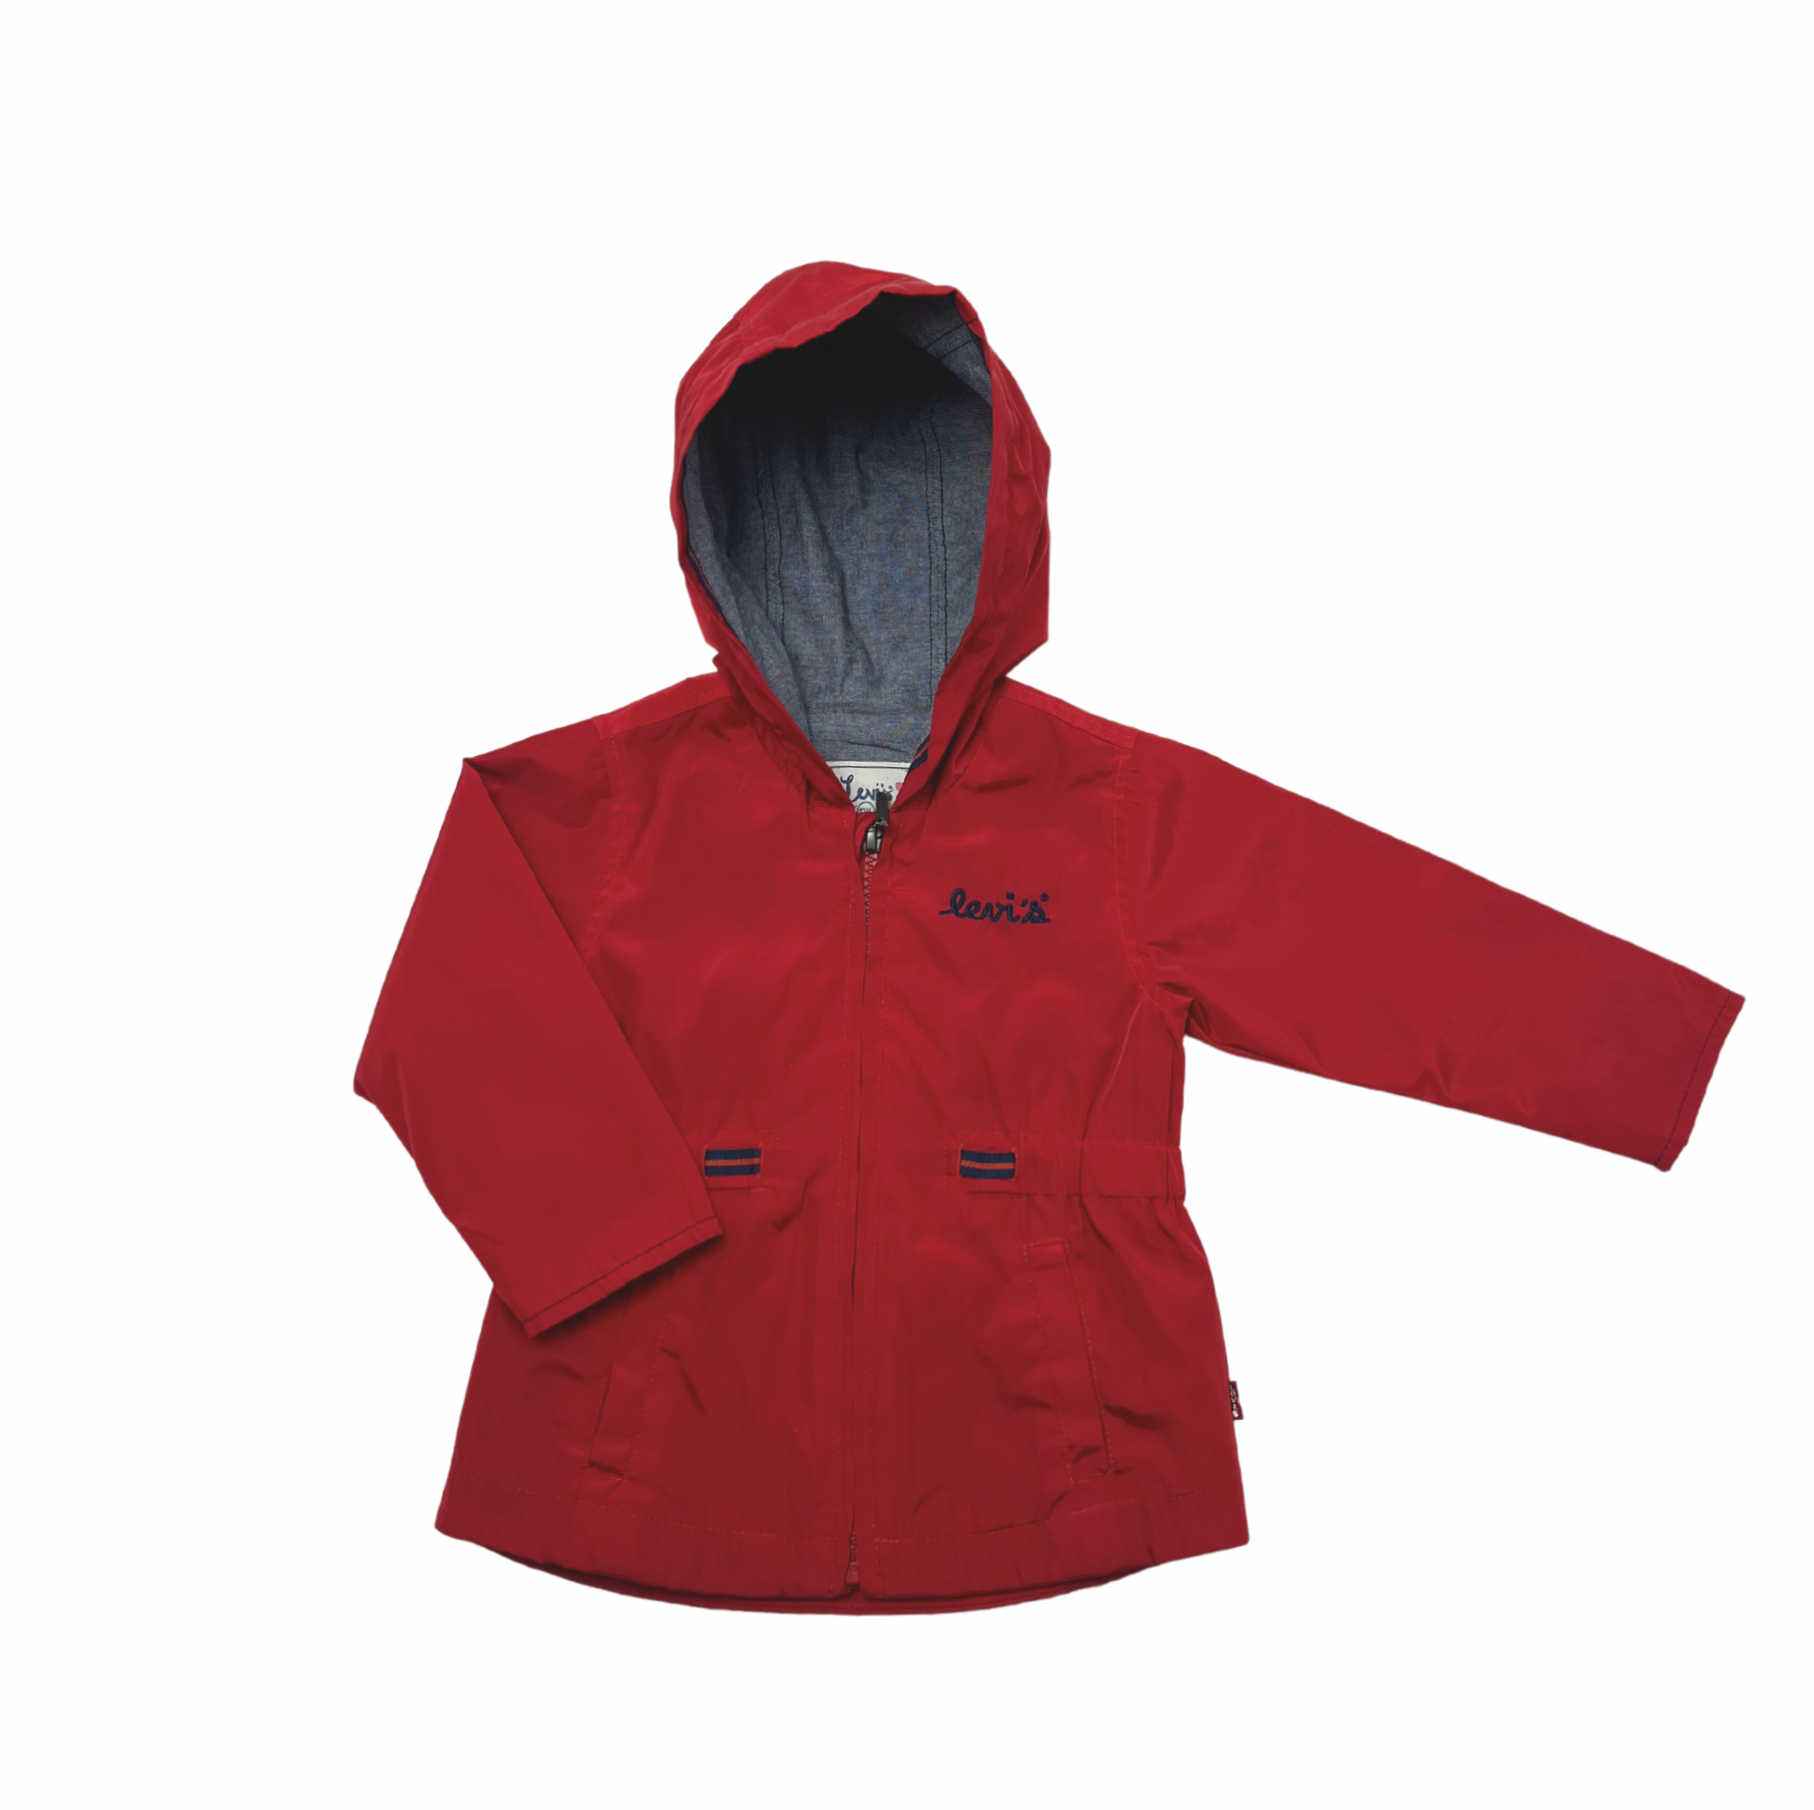 LEVI'S - Waterproof jacket - 1 year